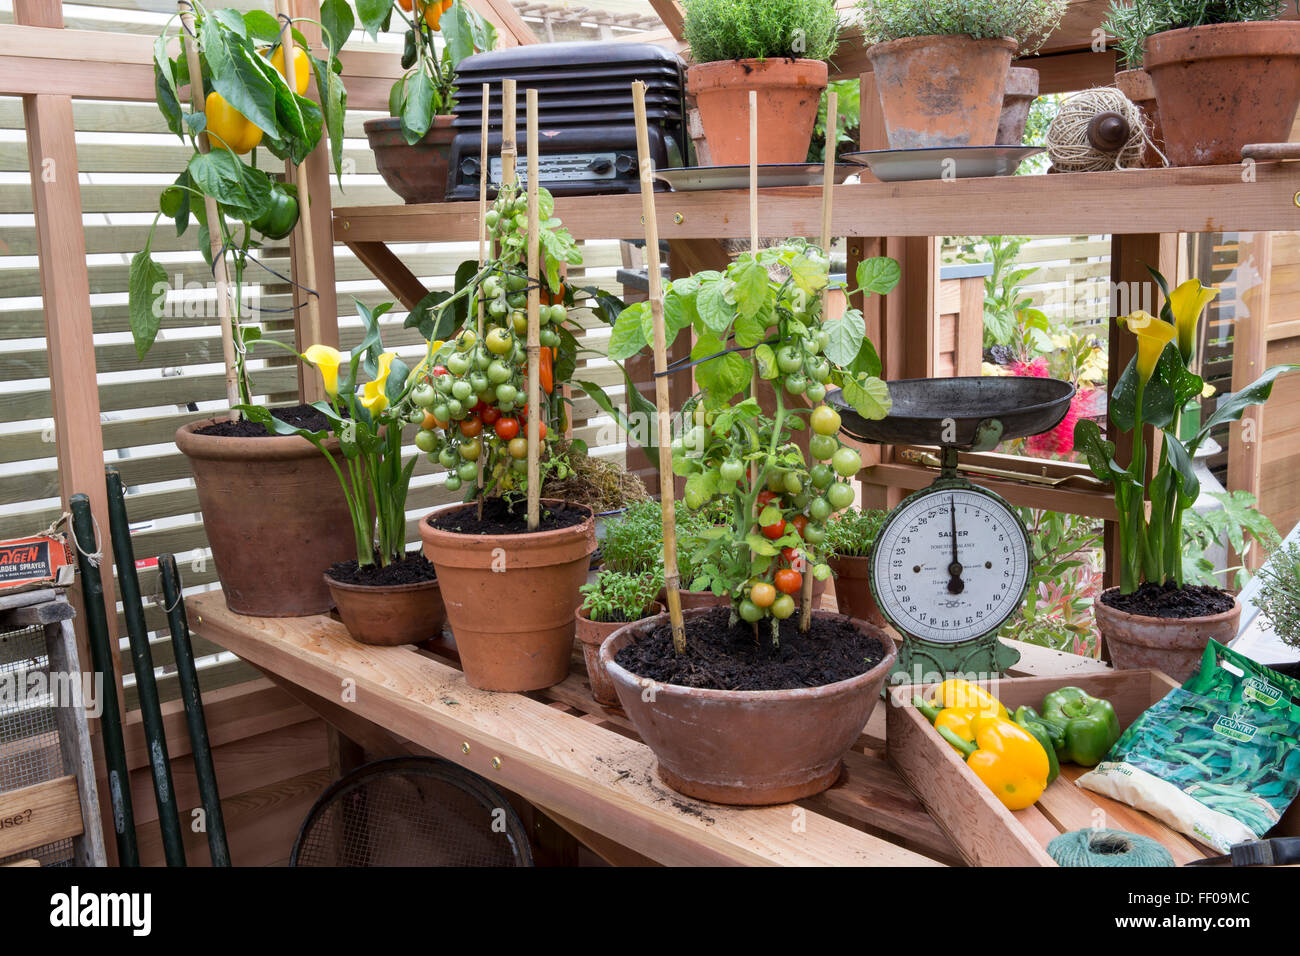 Tomaten- und Pfefferpflanzen, die in einem Gewächshaus in Terrakotta-Töpfen wachsen Behälter angebaute Tomaten Paprika Chelsea Flower Show 2015 london UK Stockfoto